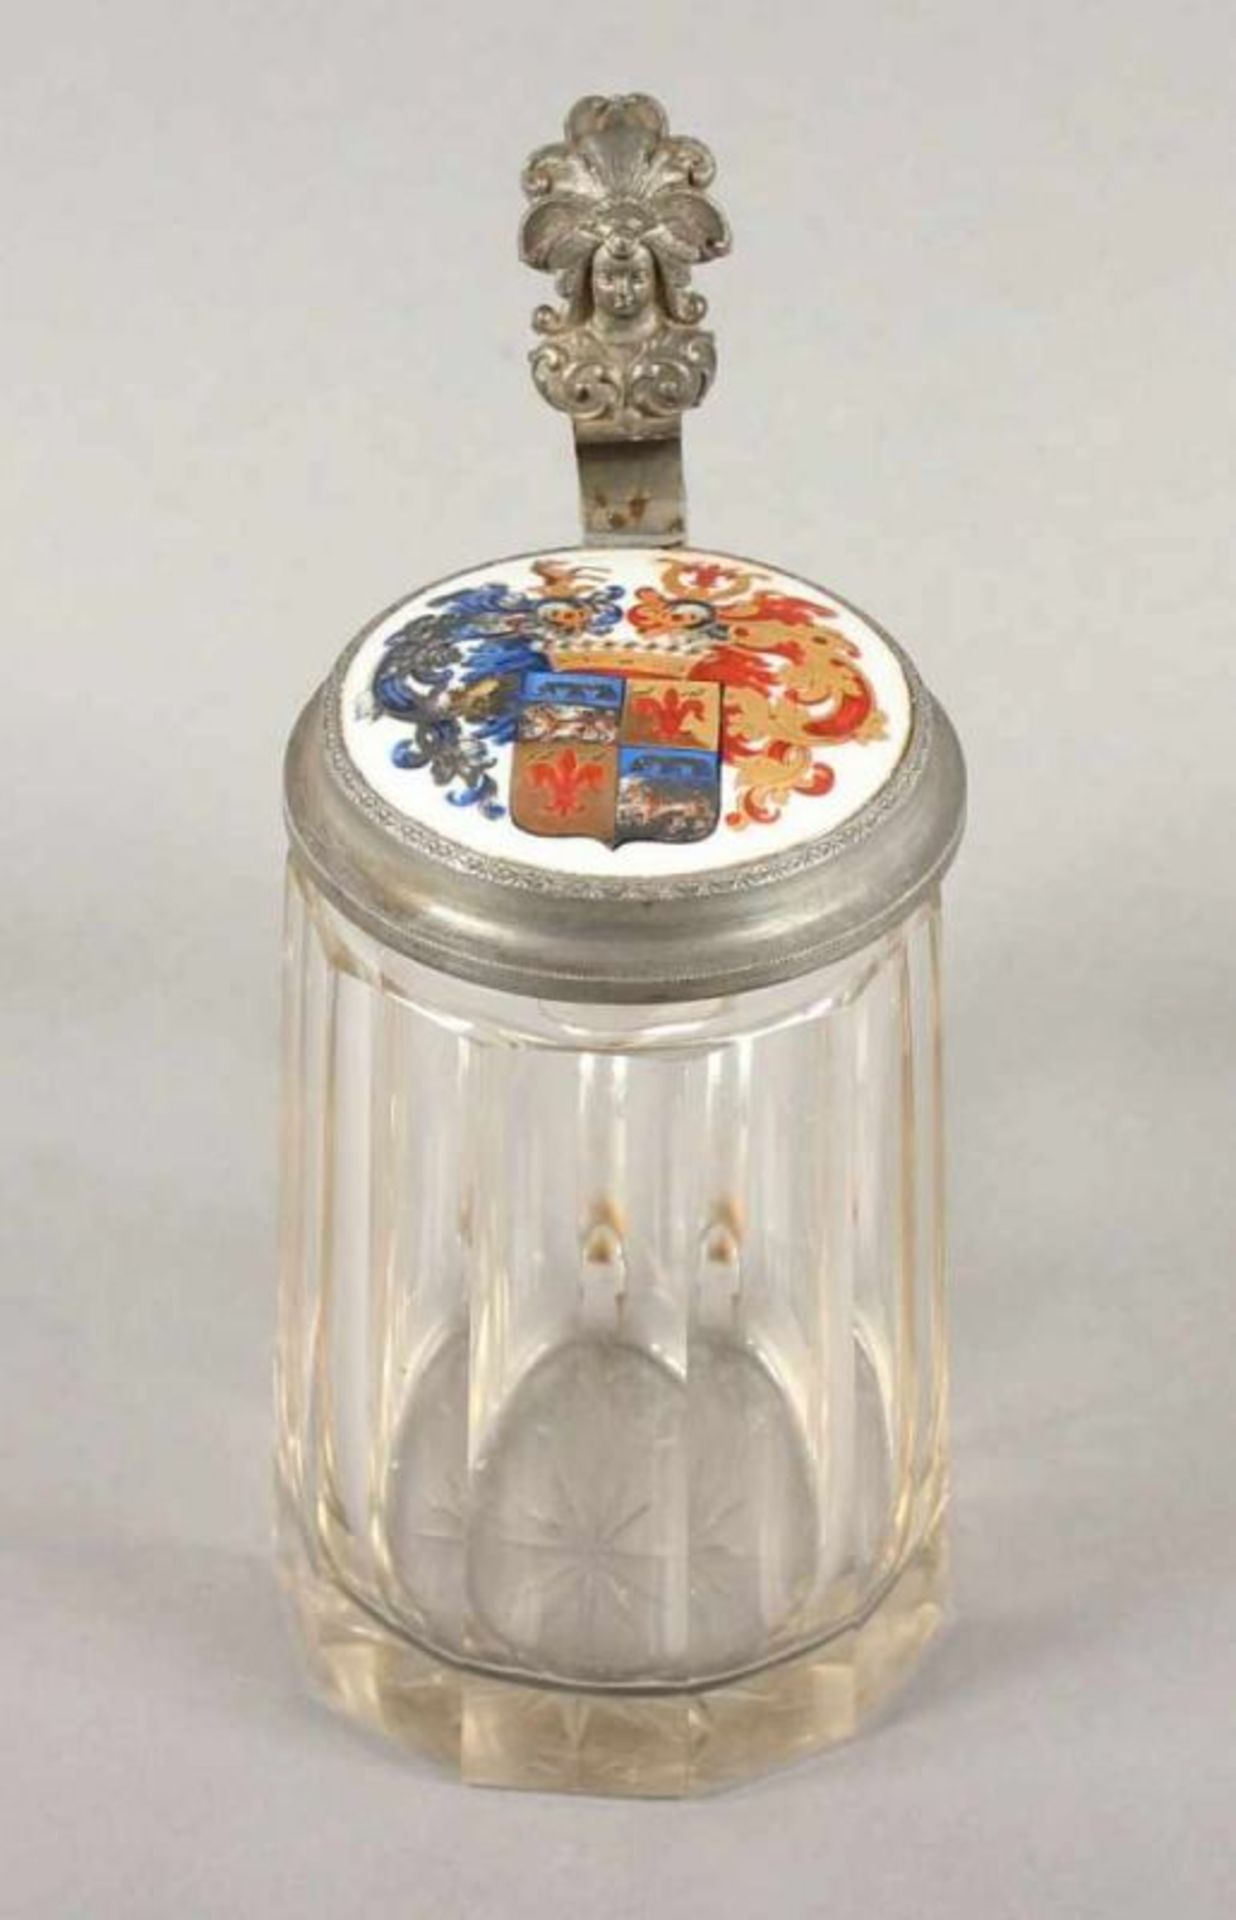 HUMPEN, farbloses Glas, Zinnmontur, Porzellanmedaillon mit polychrom gemalter Wappenzier, H 18,5,